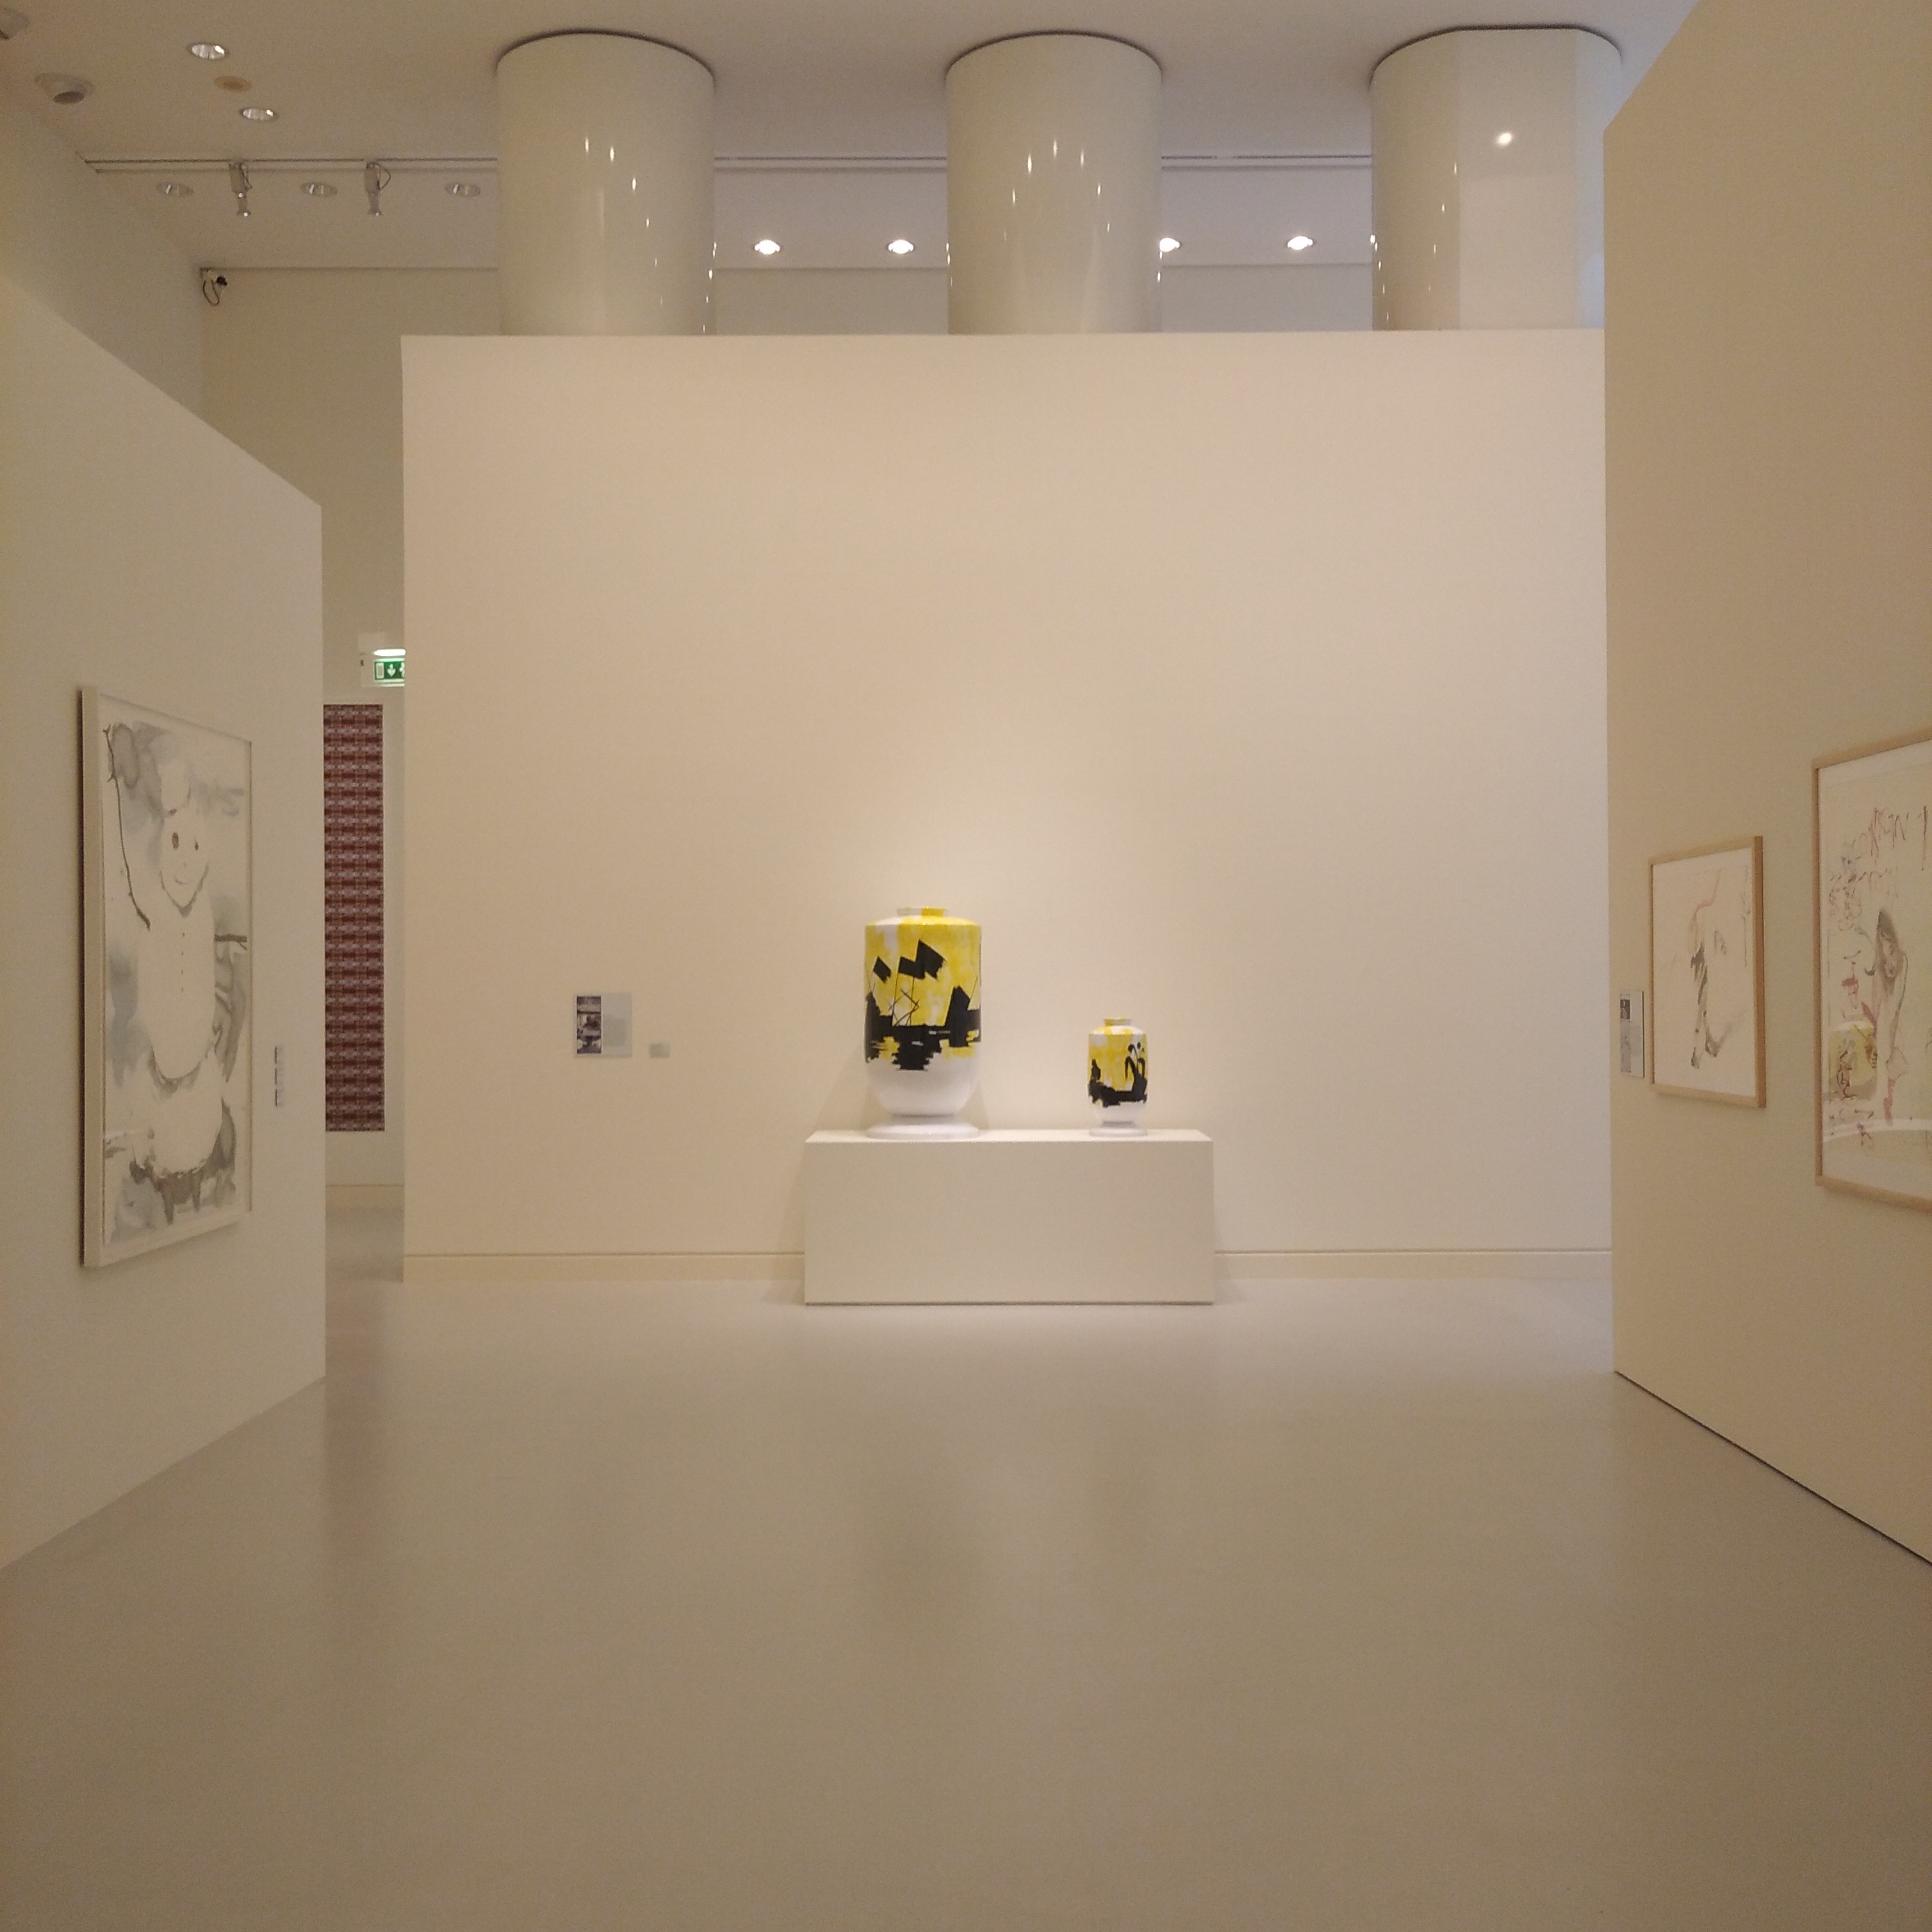 Évaporations Silencieuses acquises par le Musée d'Art Moderne et Contemporain de Strasbourg